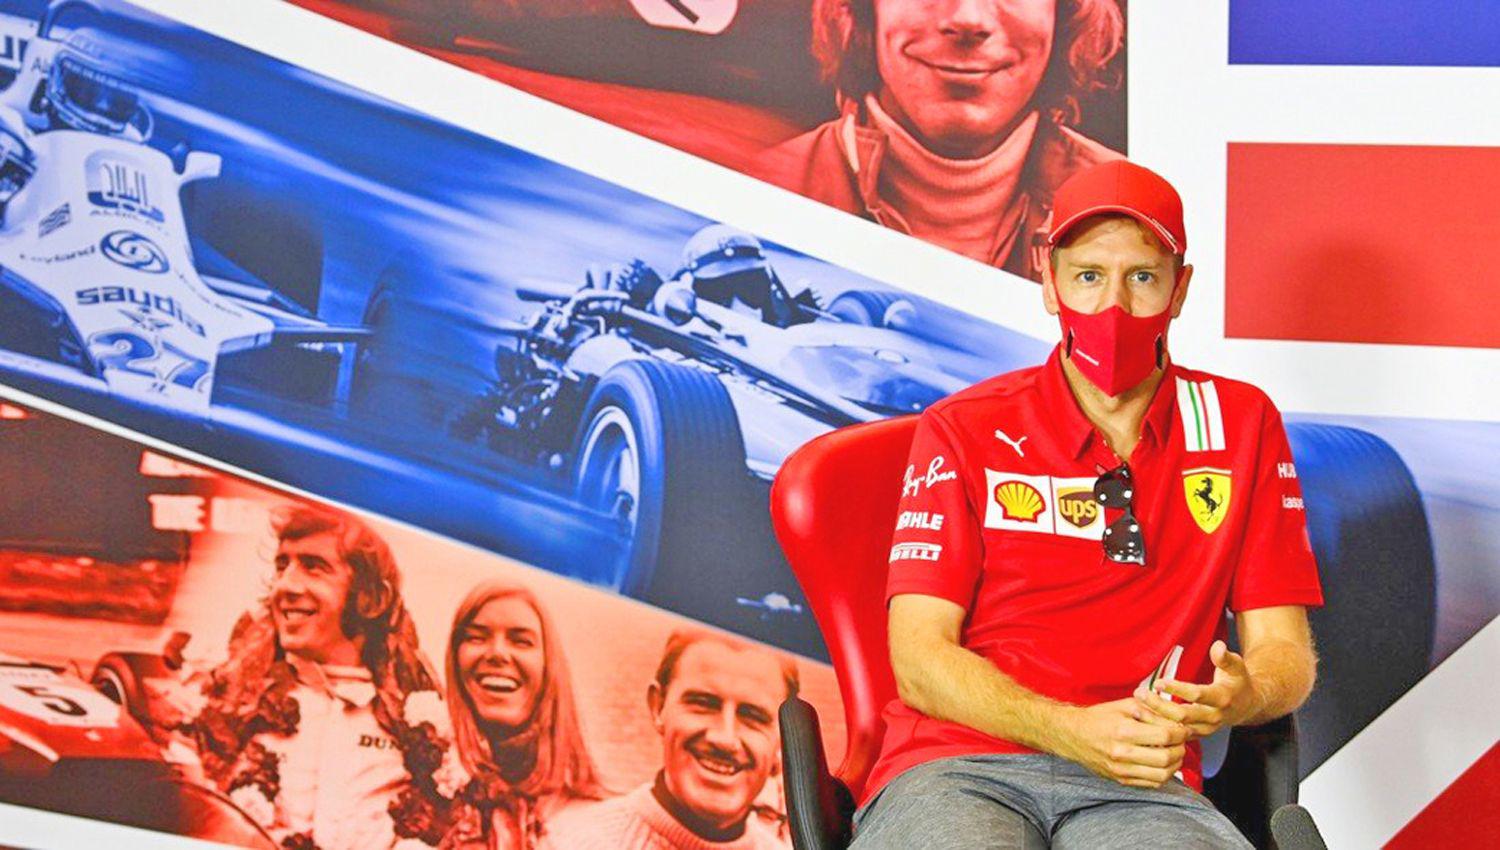 Vettel no seguir� en Ferrari e incluso podría alejarse de la Fórmula 1 seg�n sus propias declaraciones en conferencia